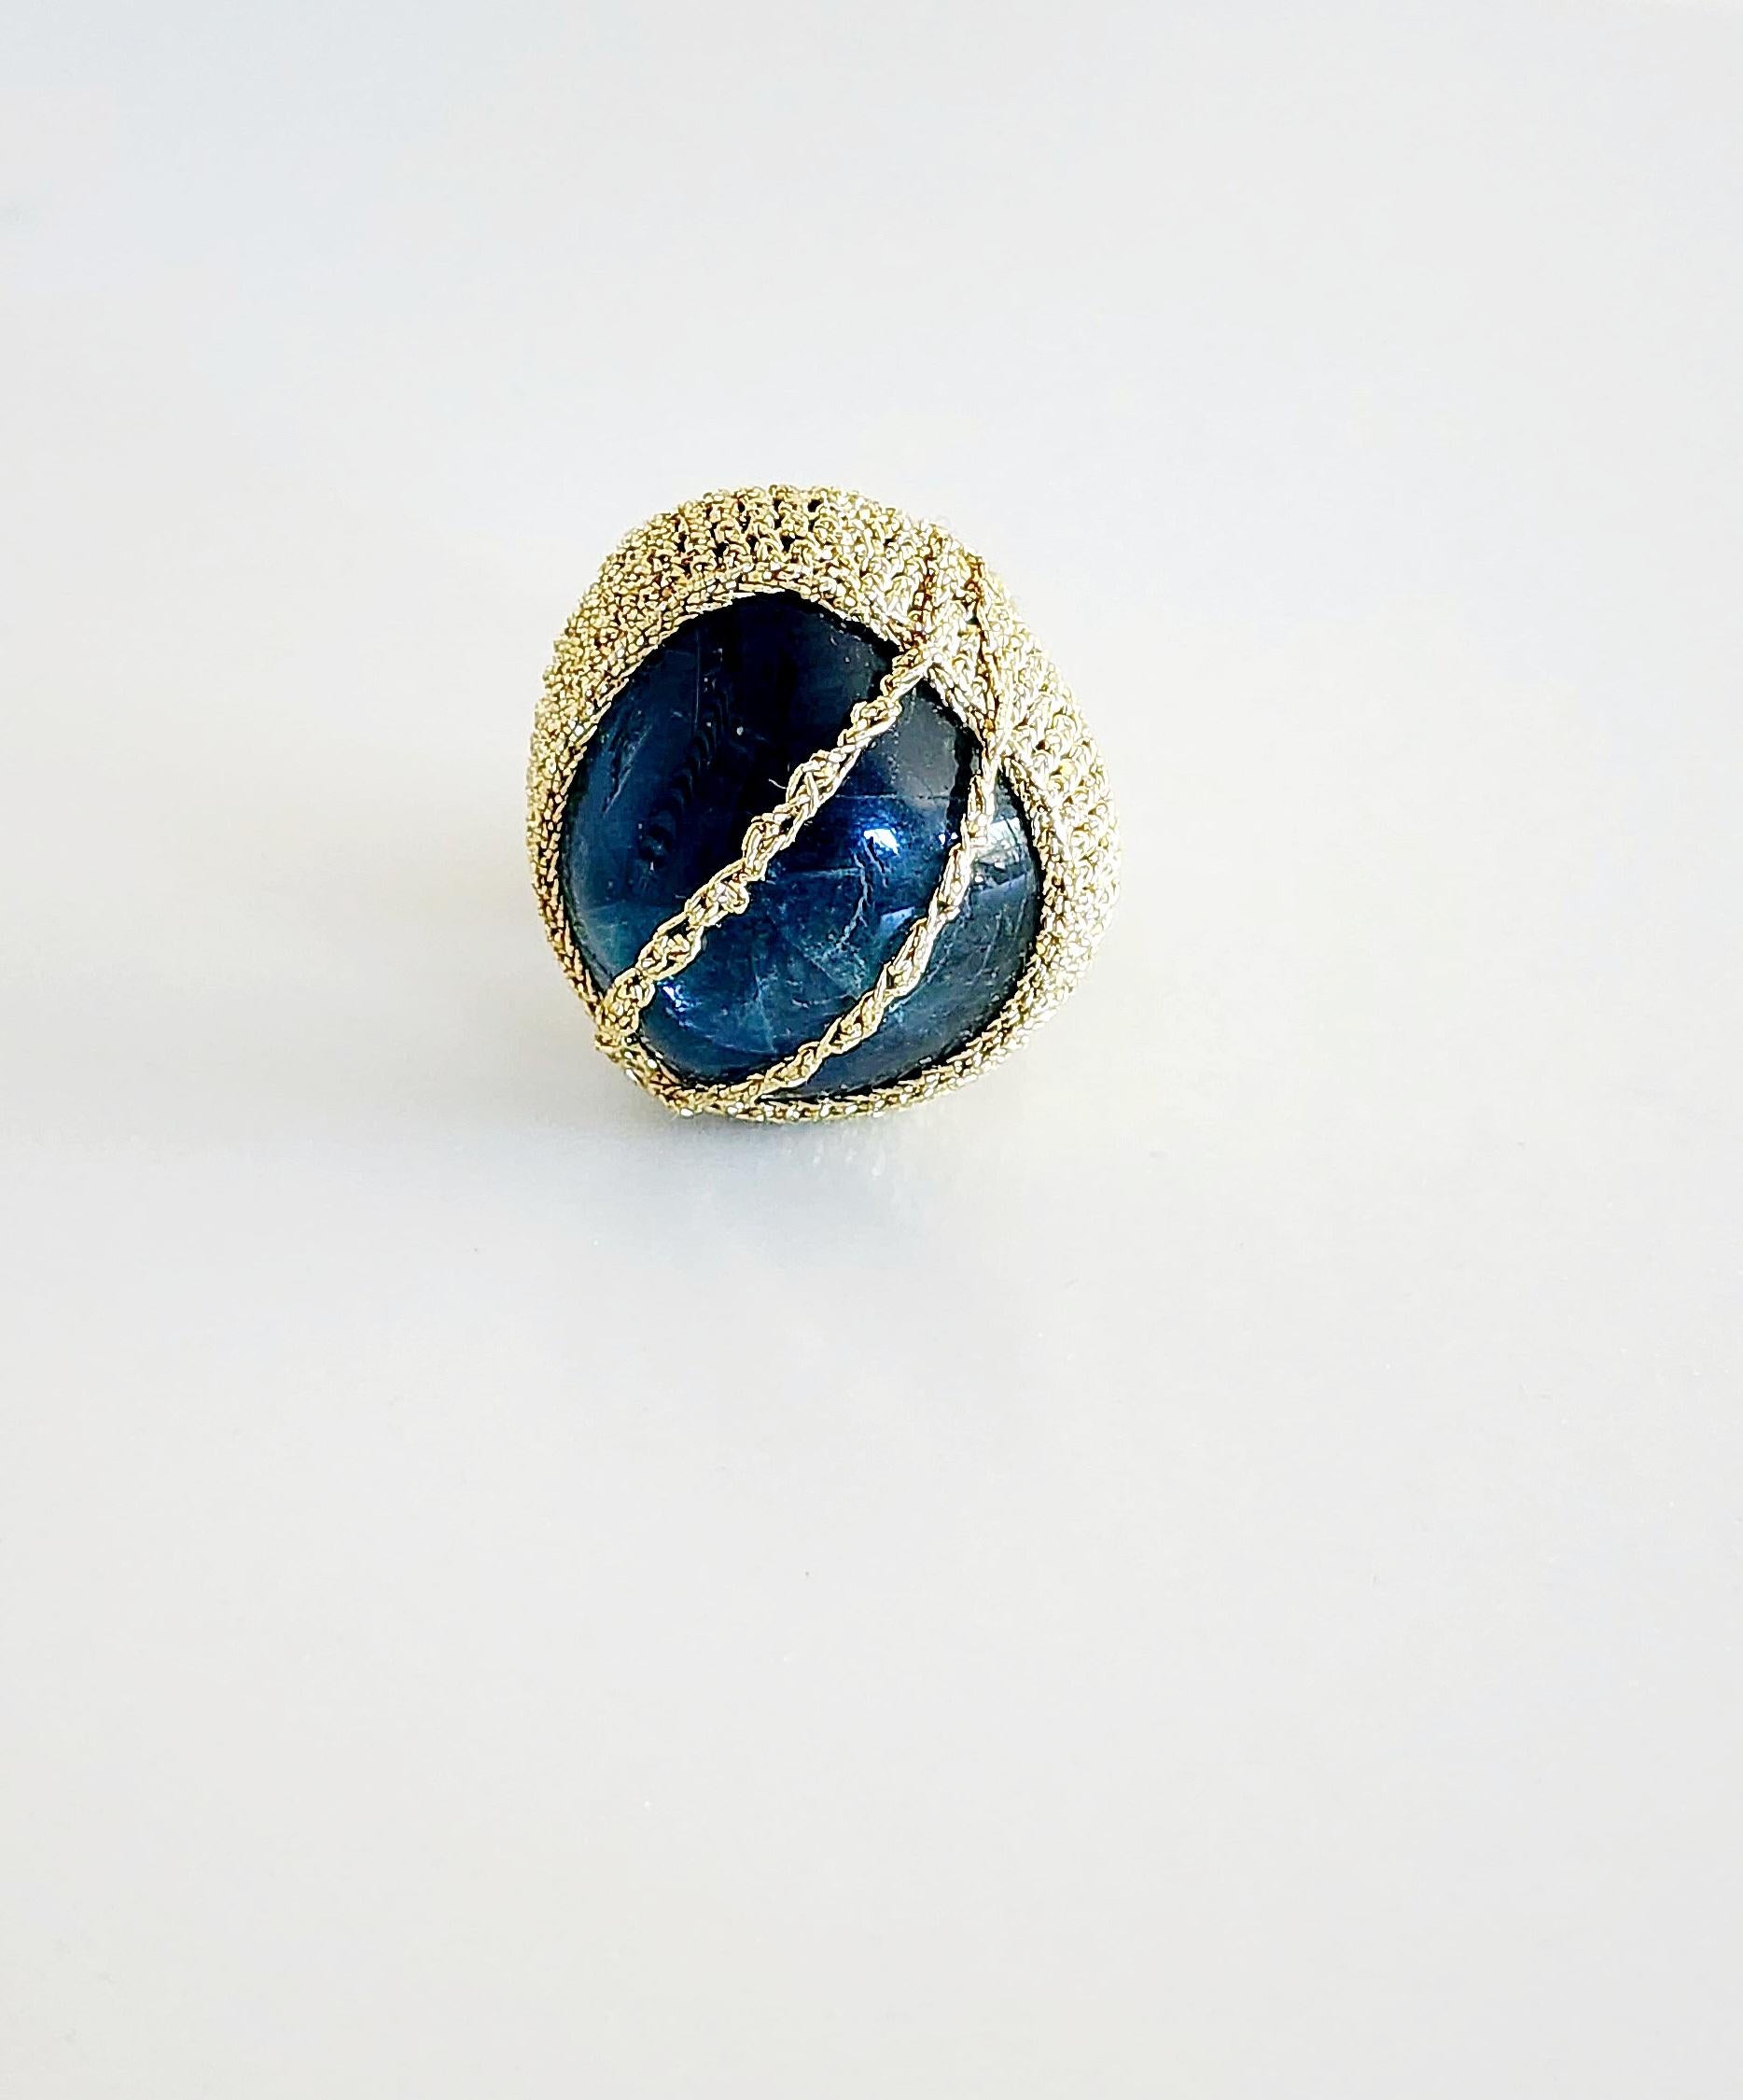 Einzigartiger gehäkelter Ring. Der Ring ist mit einem hellgoldenen, glatten Faden gehäkelt. Kein Metallgehalt. Der Stein ist ein tiefblauer natürlicher Fluoritstein.